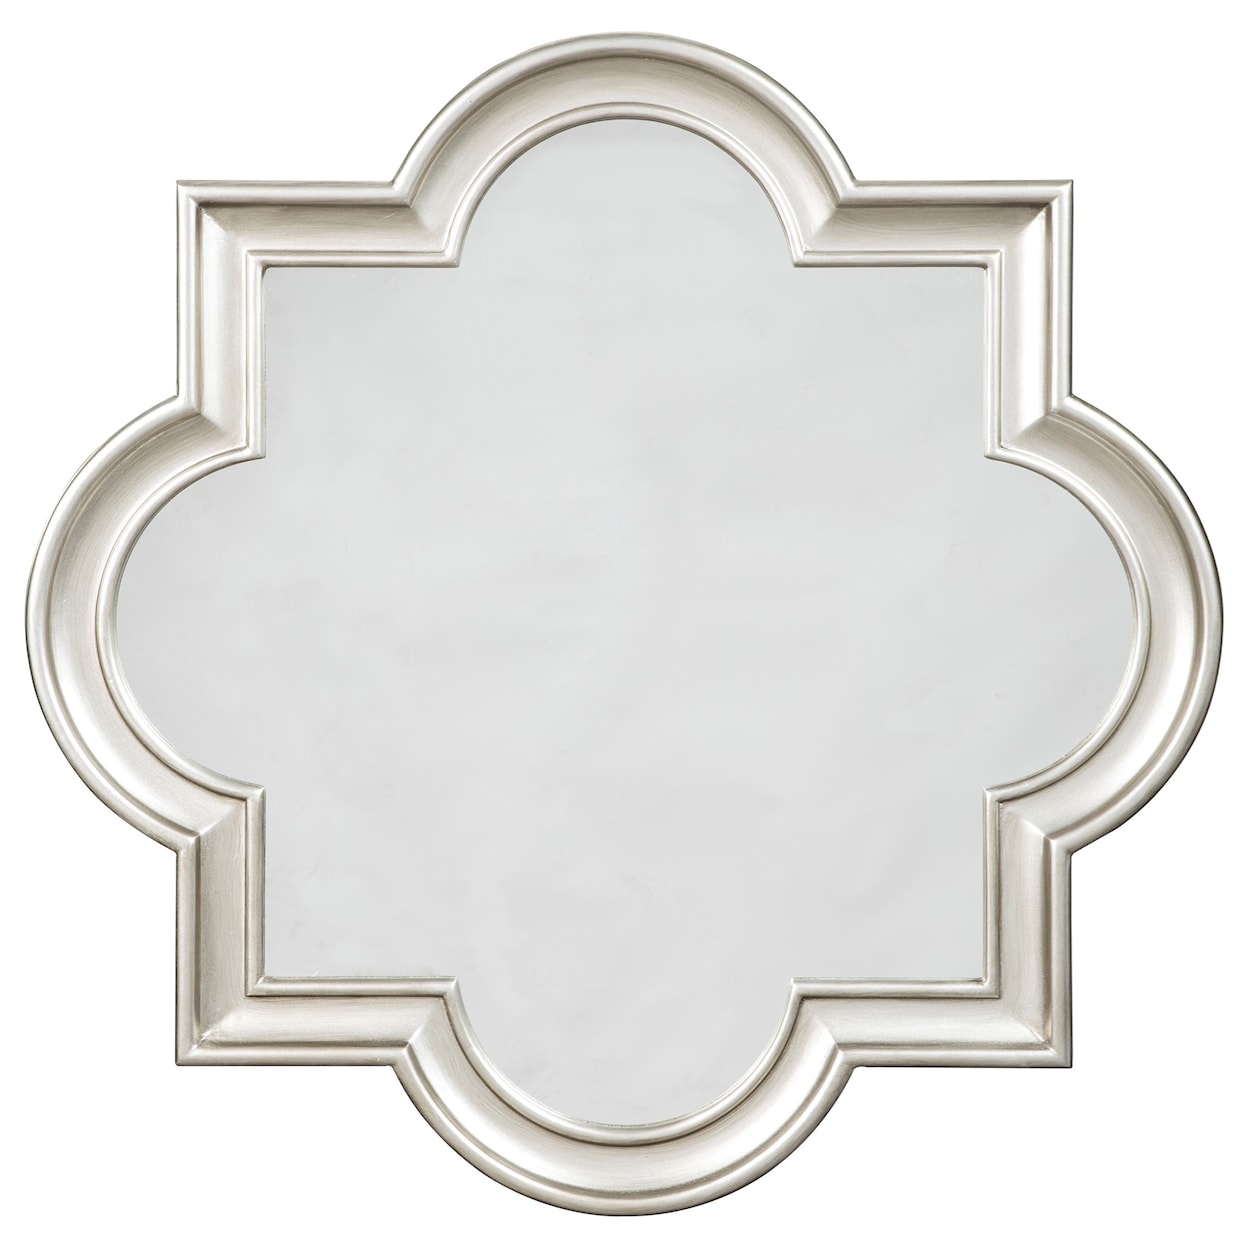 Signature Design by Ashley Furniture Accent Mirrors Desma Gold Finish Accent Mirror